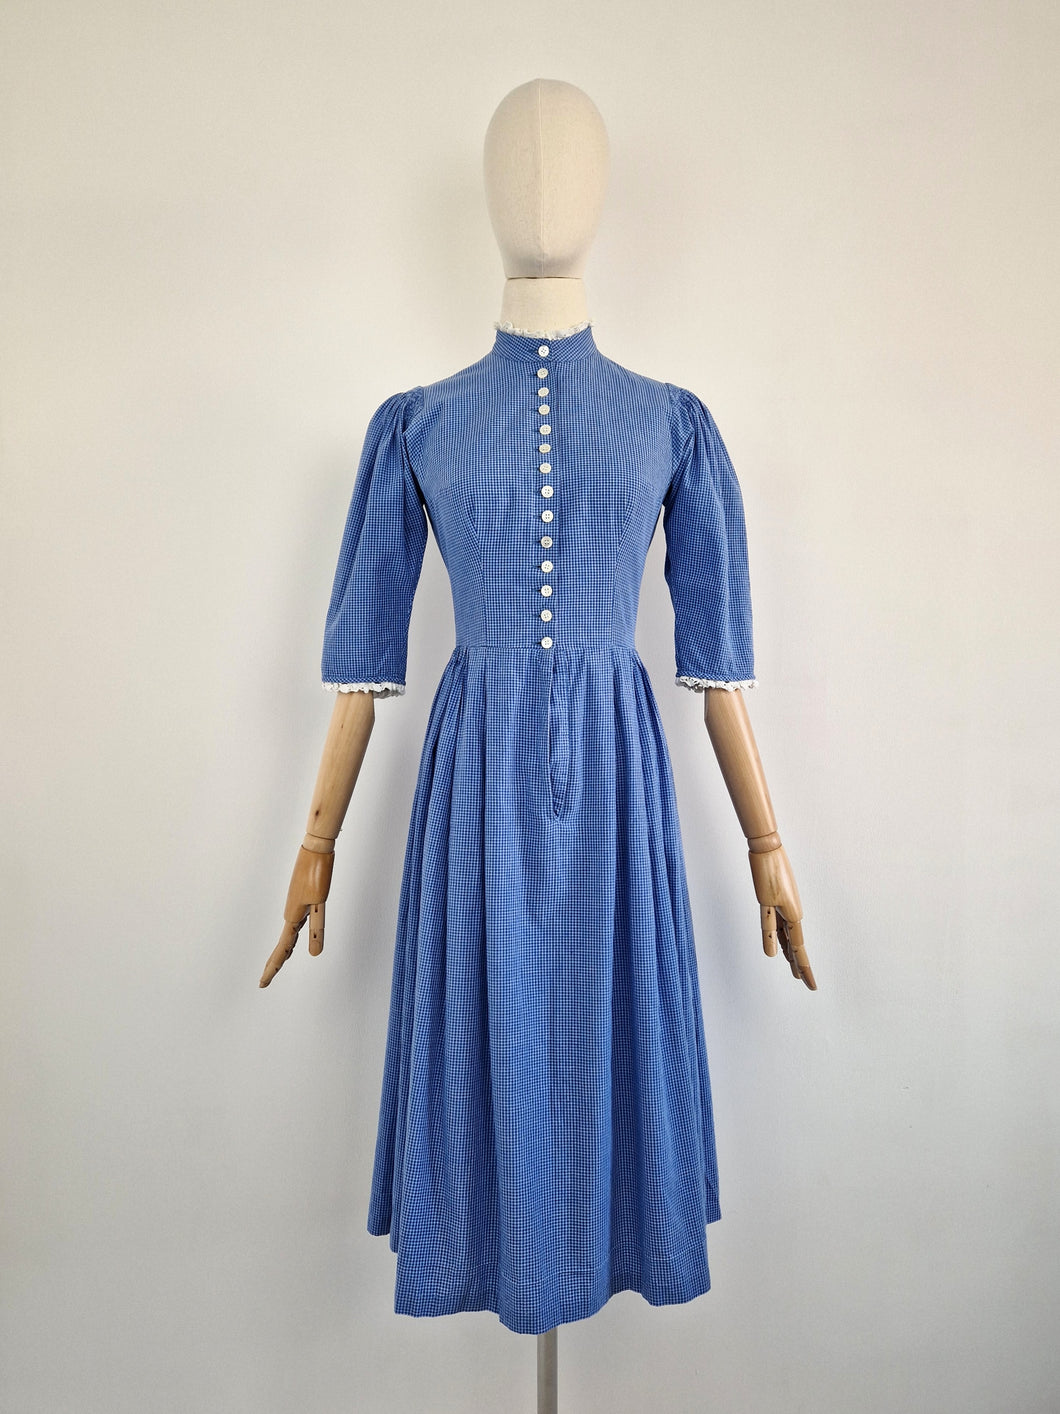 Vintage 80s gingham dirndl cottagecore dress